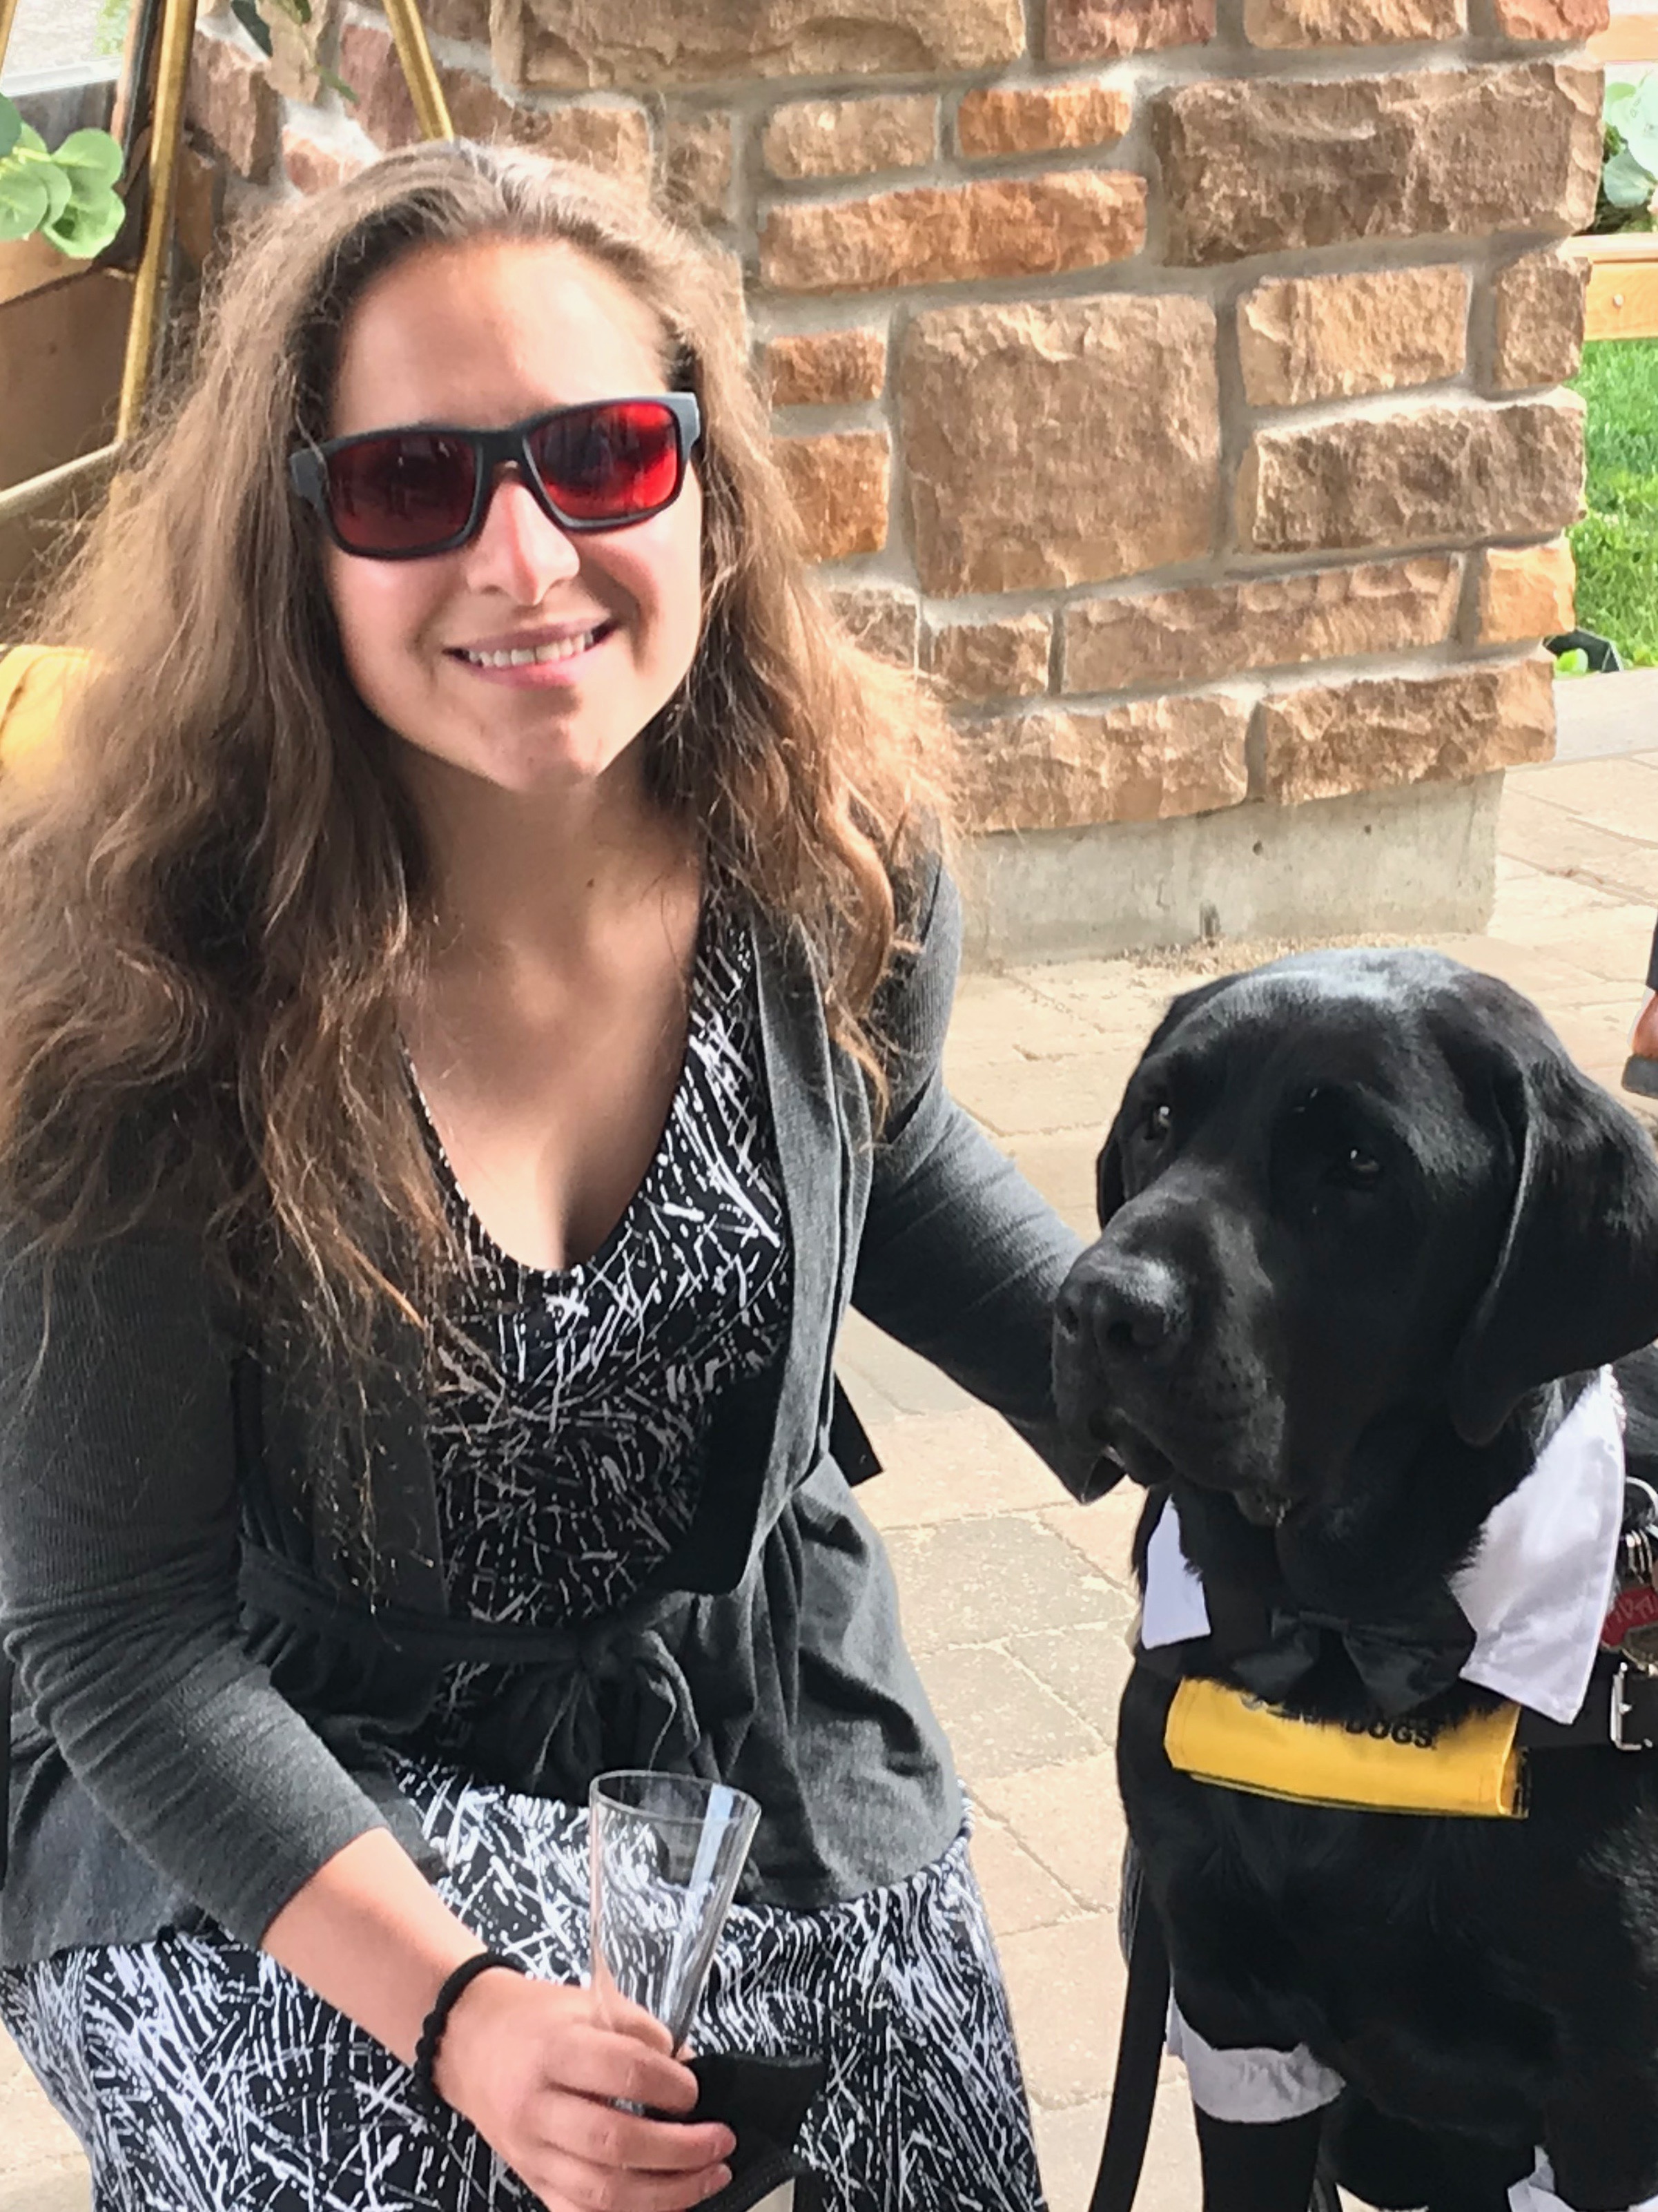 Amanda, agenouillée à lAmanda, agenouillée à l’extérieur et portant des lunettes de soleil teintées de rouge, pose pour la caméra à côté d’Ivan, son chien-guide d’INCA.